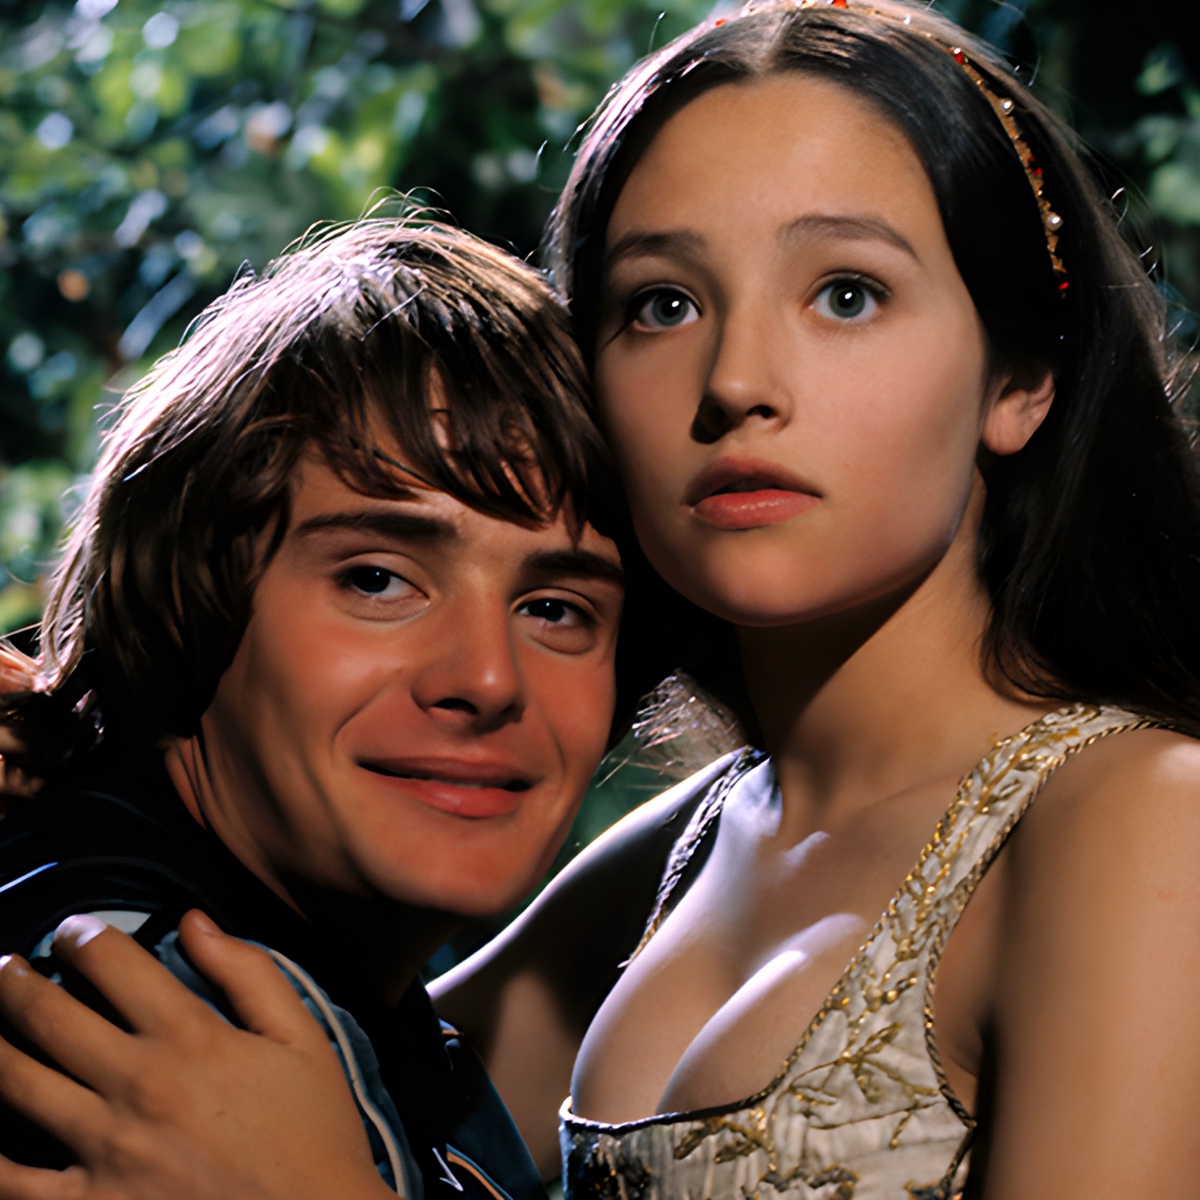 Ромео и Джульетта фильм 1986